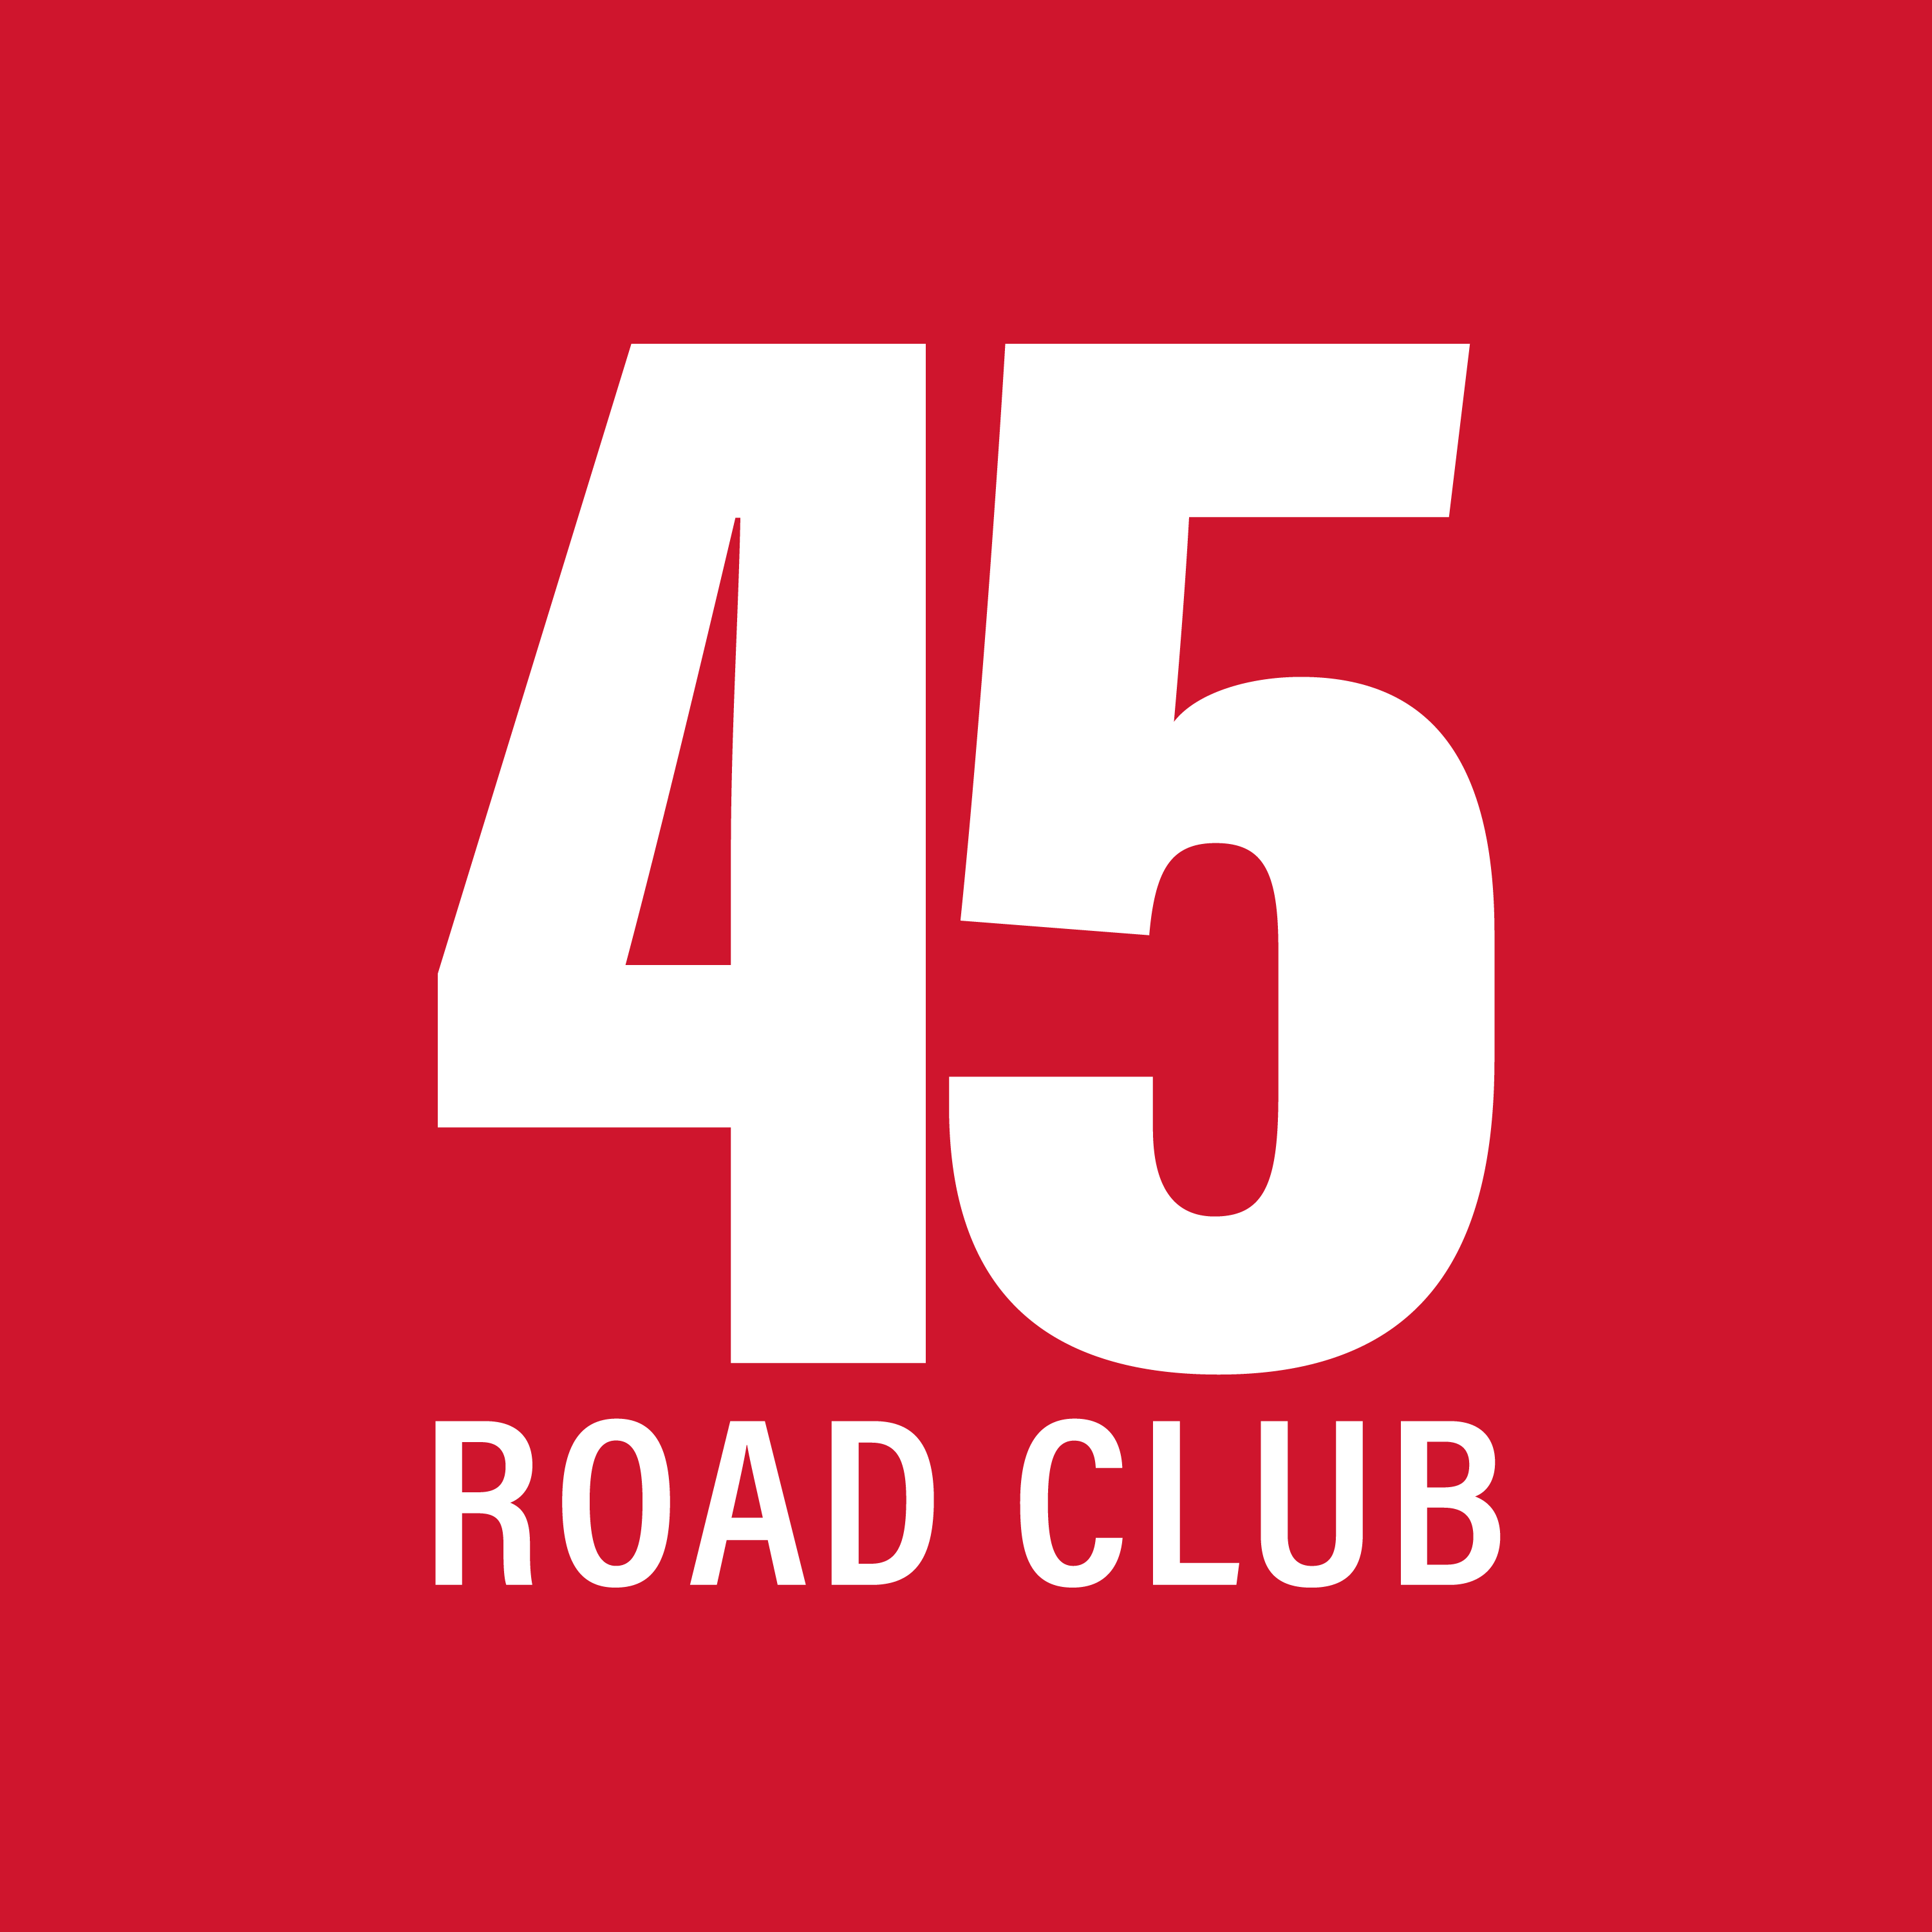 Club Image for 45 ROAD CLUB